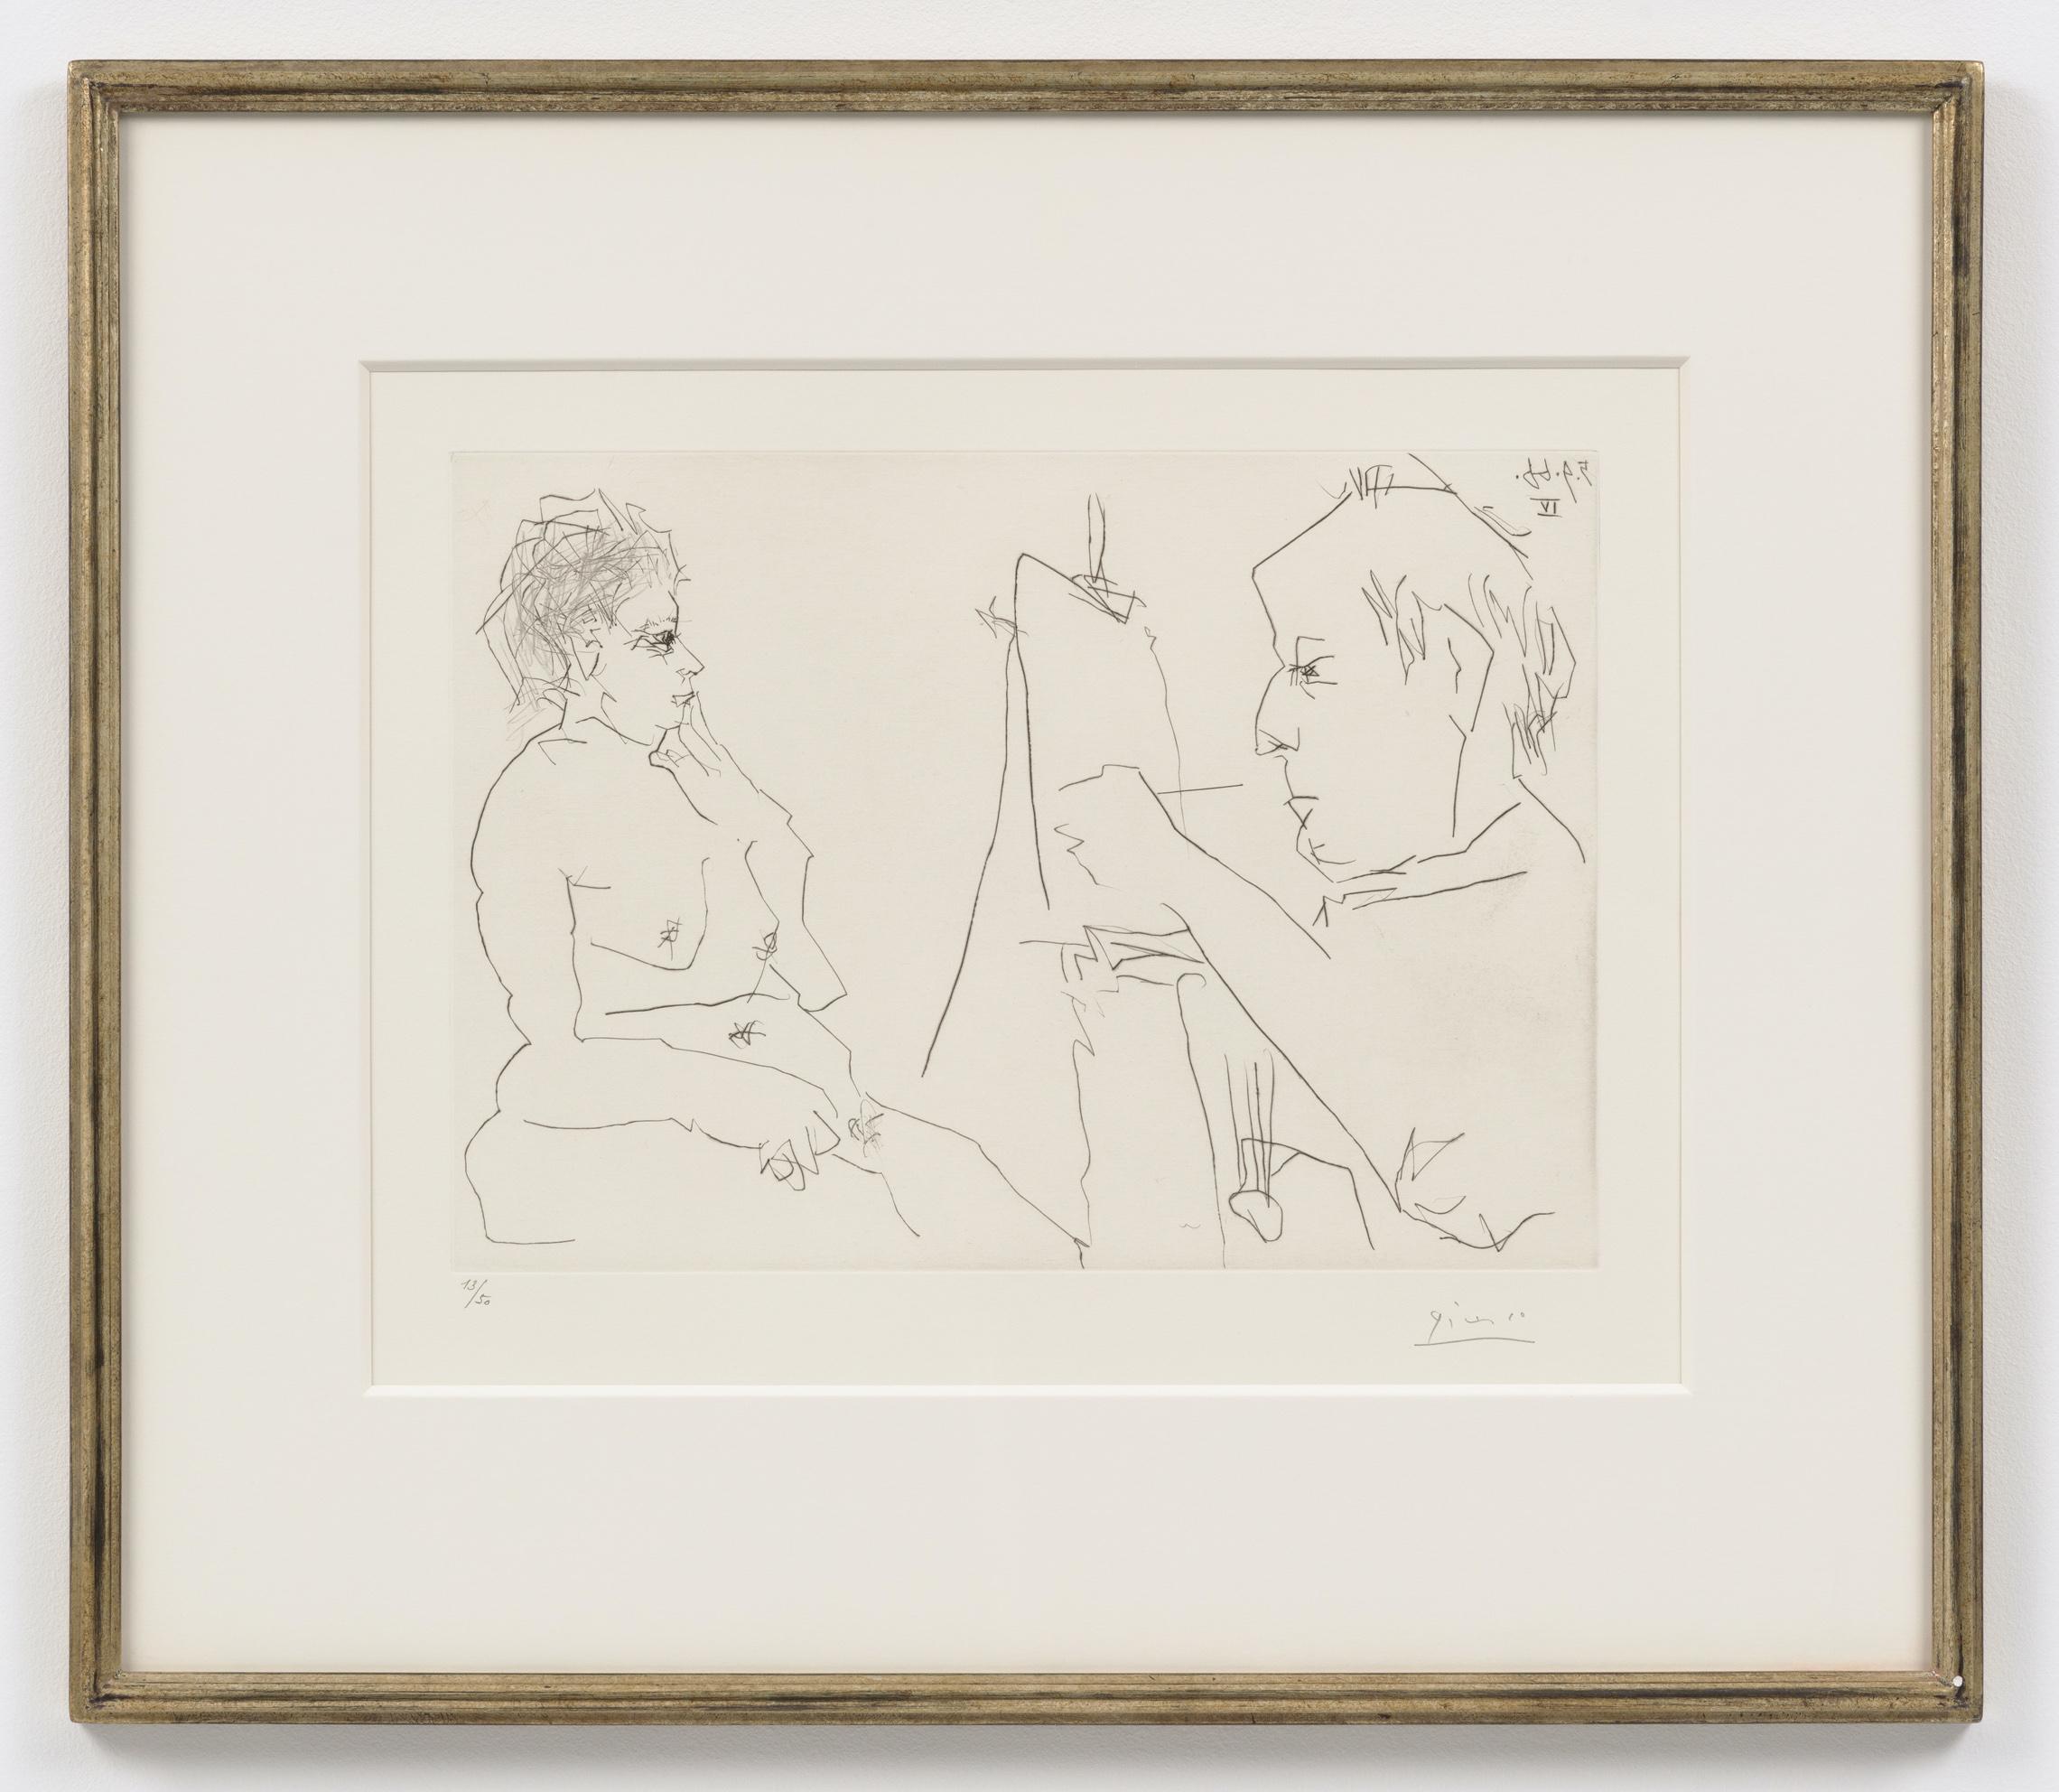 Pablo Picasso Nude Print - Peintre et modele [Modele et peintre chauve], 5 septembre 1966 IV